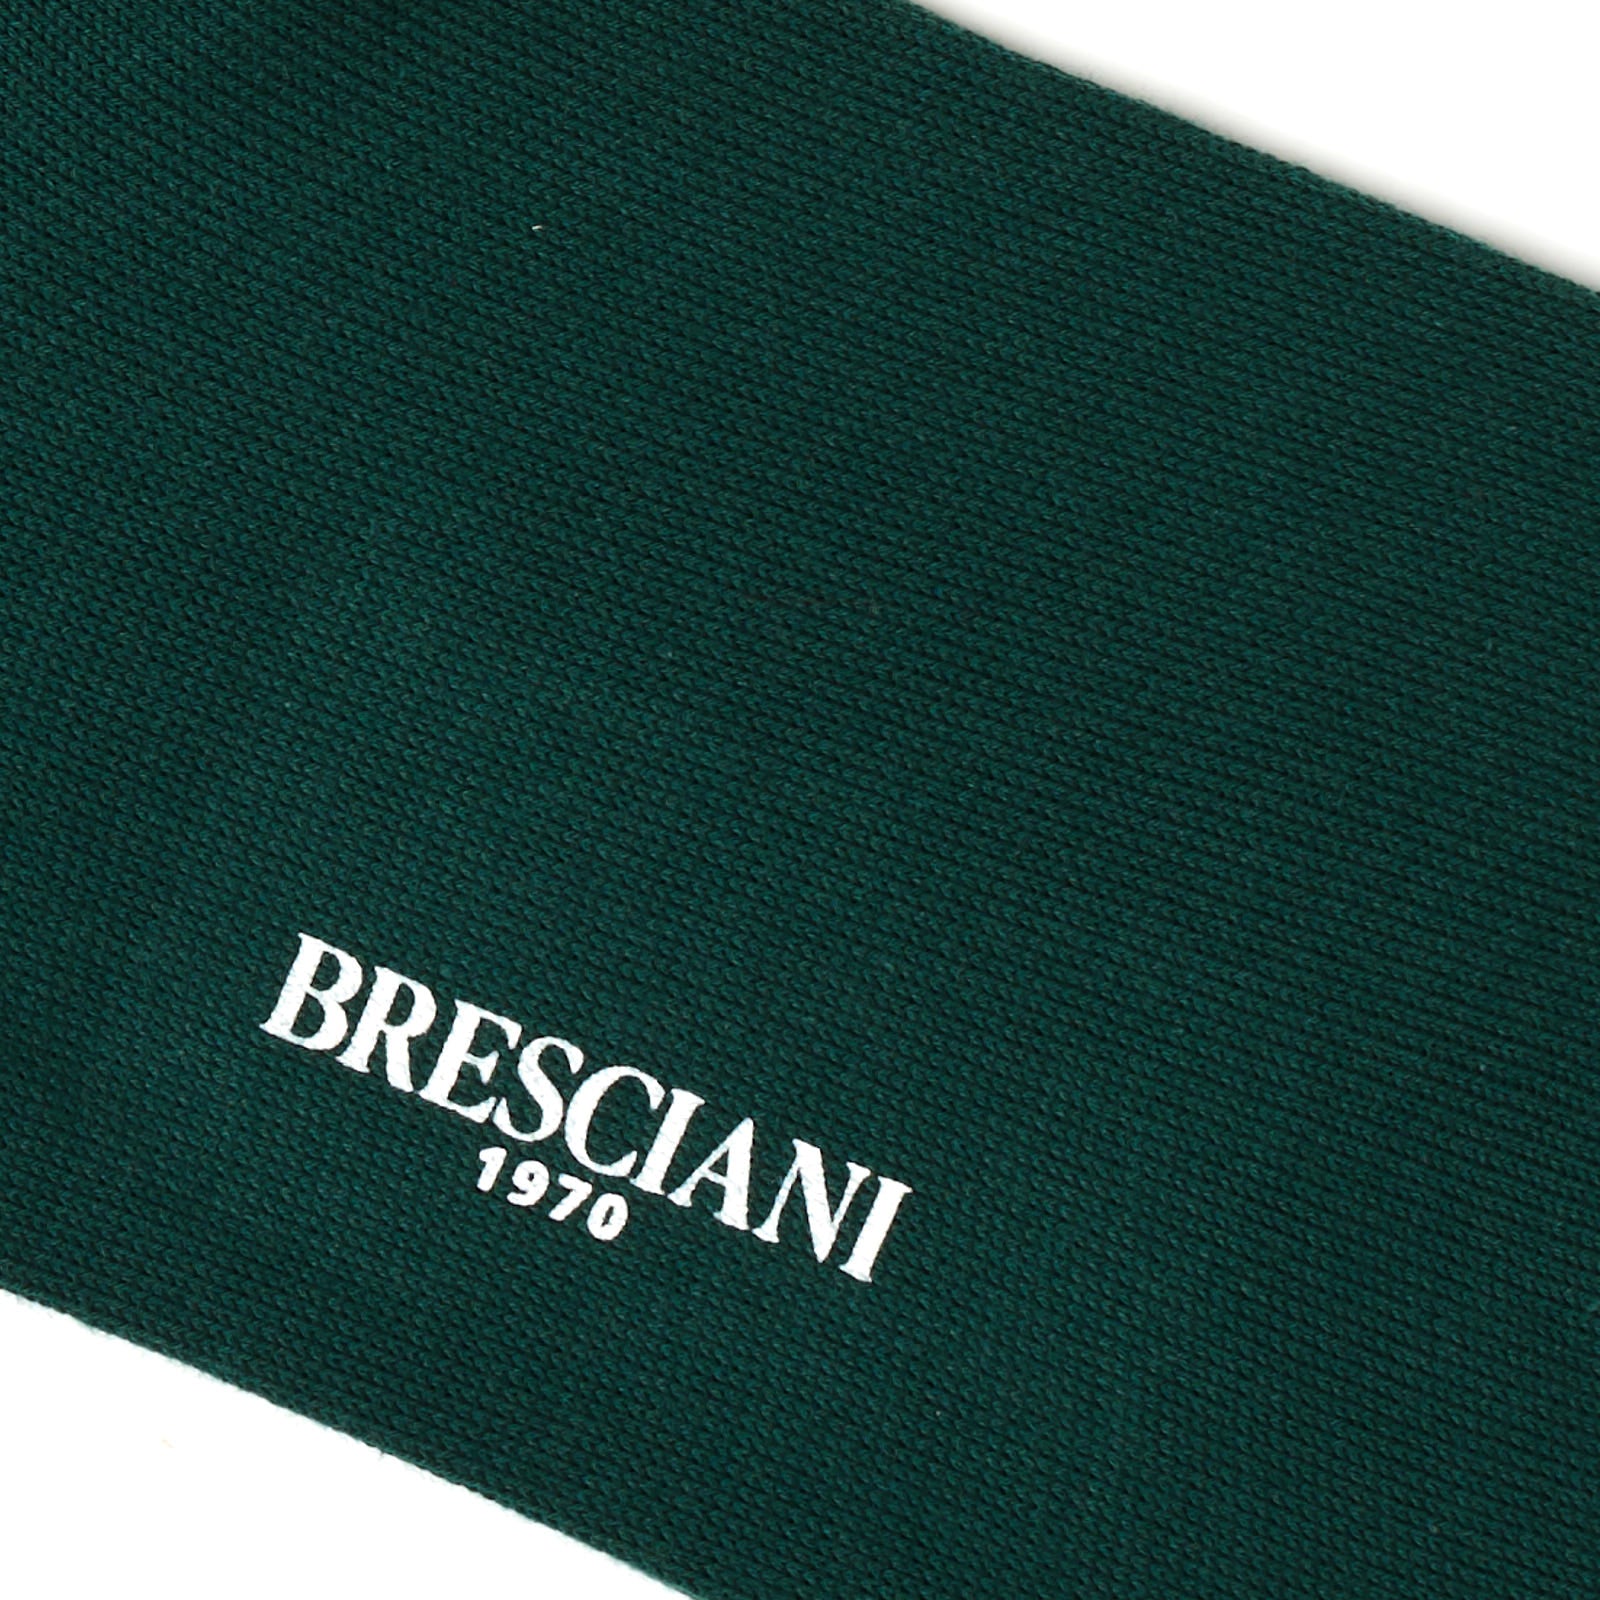 BRESCIANI Cotton Thicker Mid Calf Length Socks US L BRESCIANI